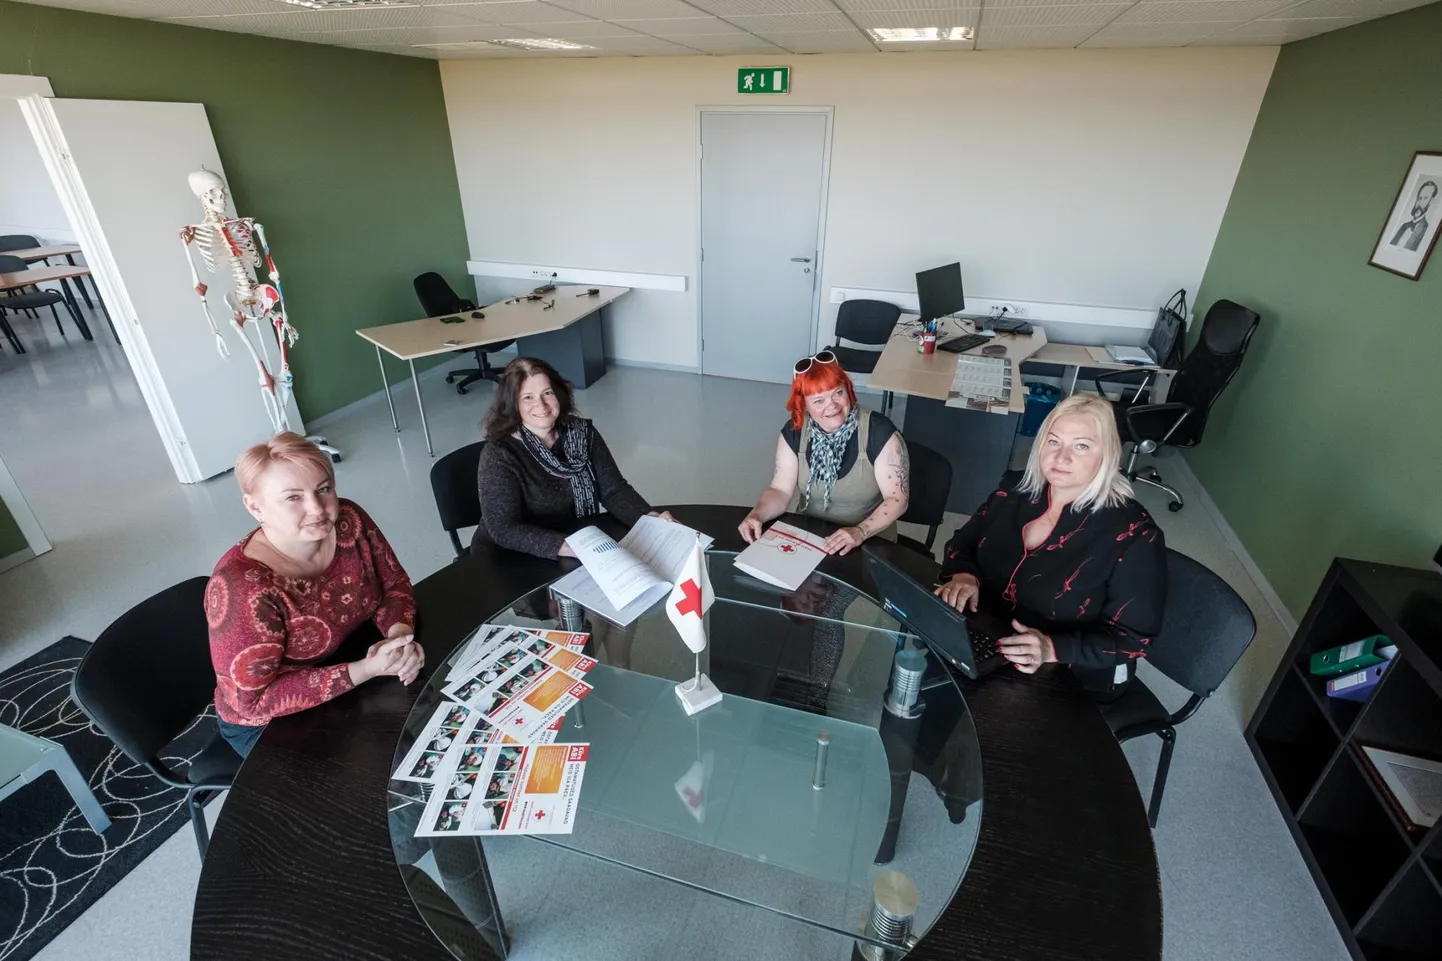 Hiie Lainela-Kollom, Krista Habakukk, Pille Lend ja Kai Kunimägi arutavad Punase Risti Pärnu kontoris tulevikuplaane.